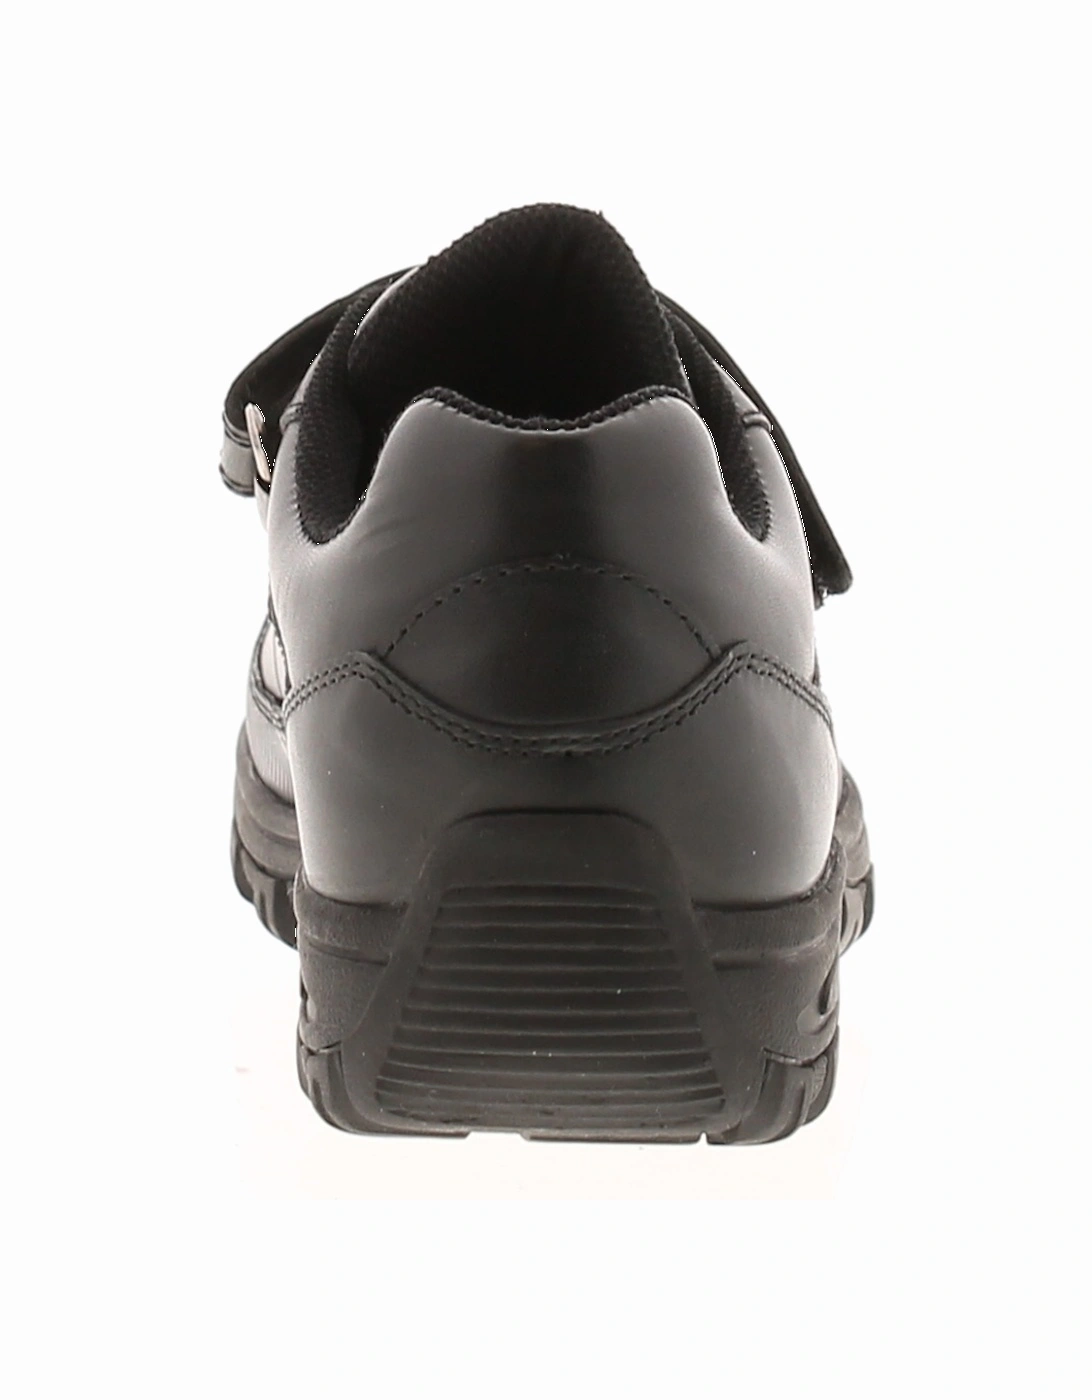 Boys School Shoes Blythe Leather black UK Size